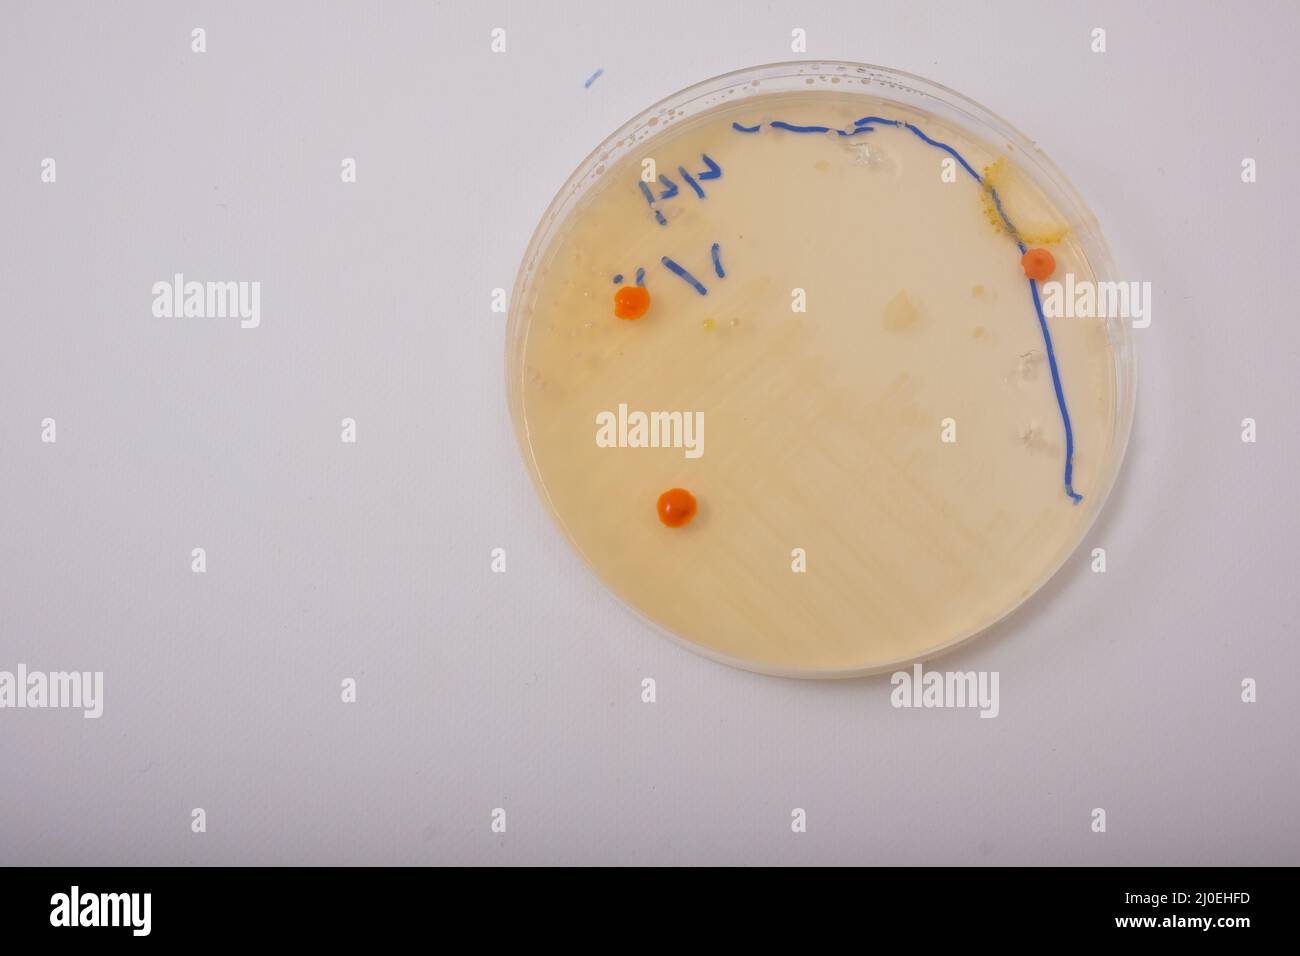 foto del crecimiento de la bacteria pseudomonas en agar nutritivo Foto de stock